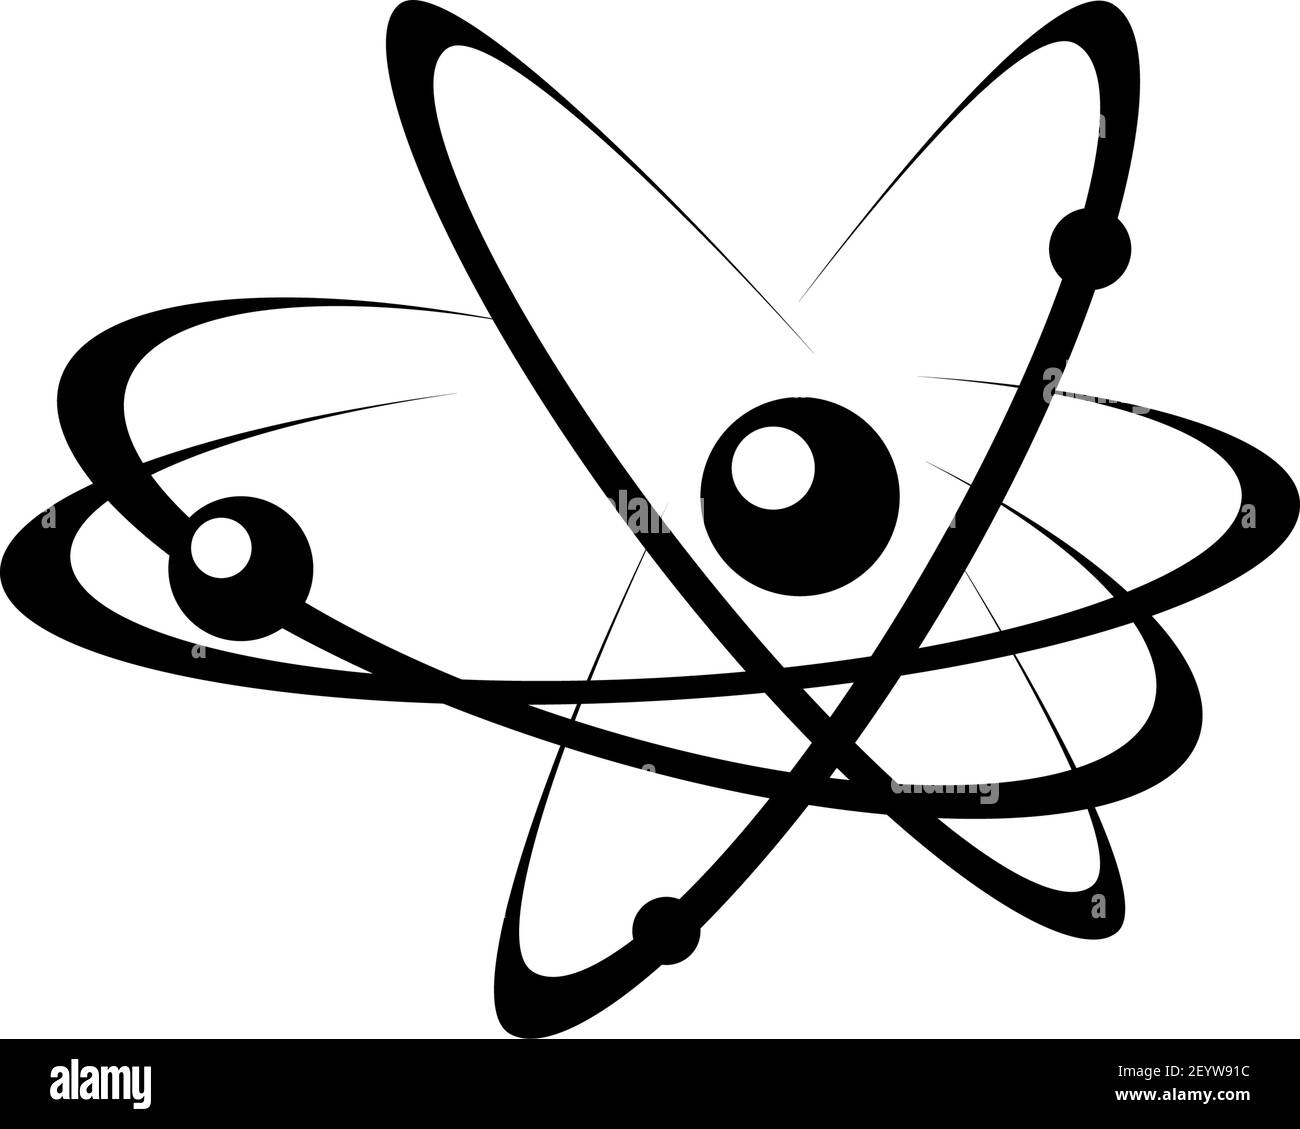 Symbole d'énergie atomique icône vecteur noir. Signe de réaction chimique. Illustration minimale des électrons se déplaçant sur des orbites. Concept de l'énergie atomique. reacti nucléaire Illustration de Vecteur